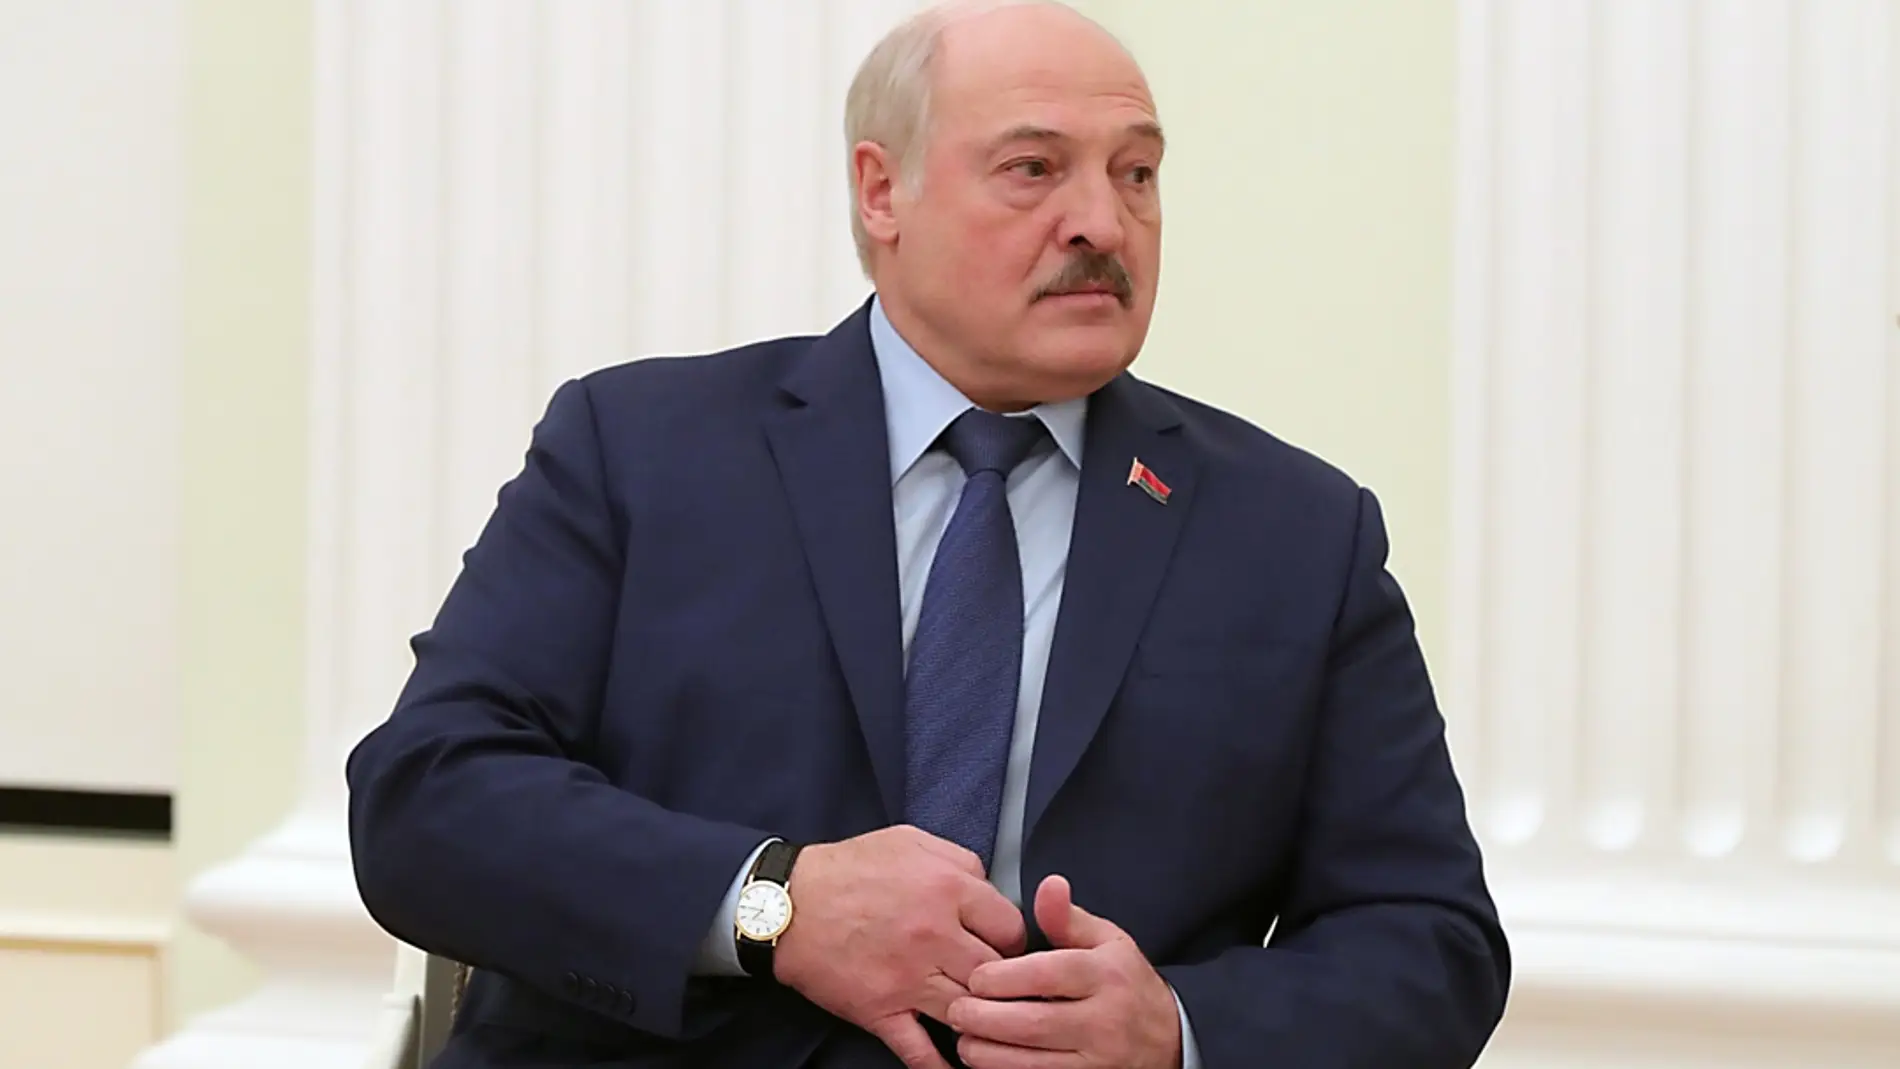 El presidente de Bielorrusia, Alexander Lukashenko, en 2022. / EFE/EPA/MIKHAIL KLIMENTYEV / KREMLIN POOL / SPUTNIK